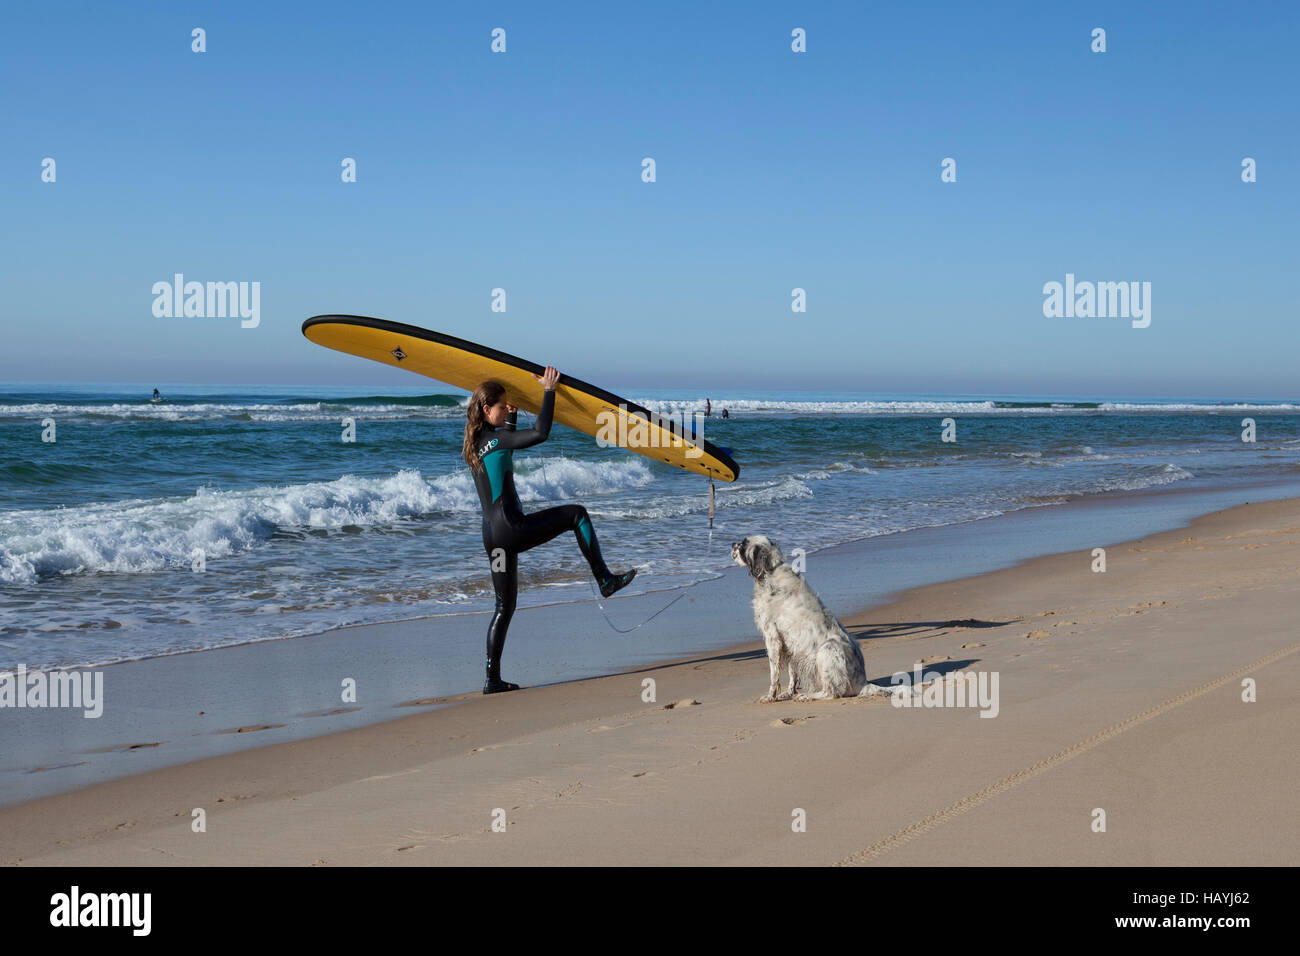 Eine weibliche Surfer kommen aus dem Wasser und die Befreiung von der Leine von ihrem Surfbrett unter dem Blick ihres Hundes (Hossegor - Frankreich). Stockfoto